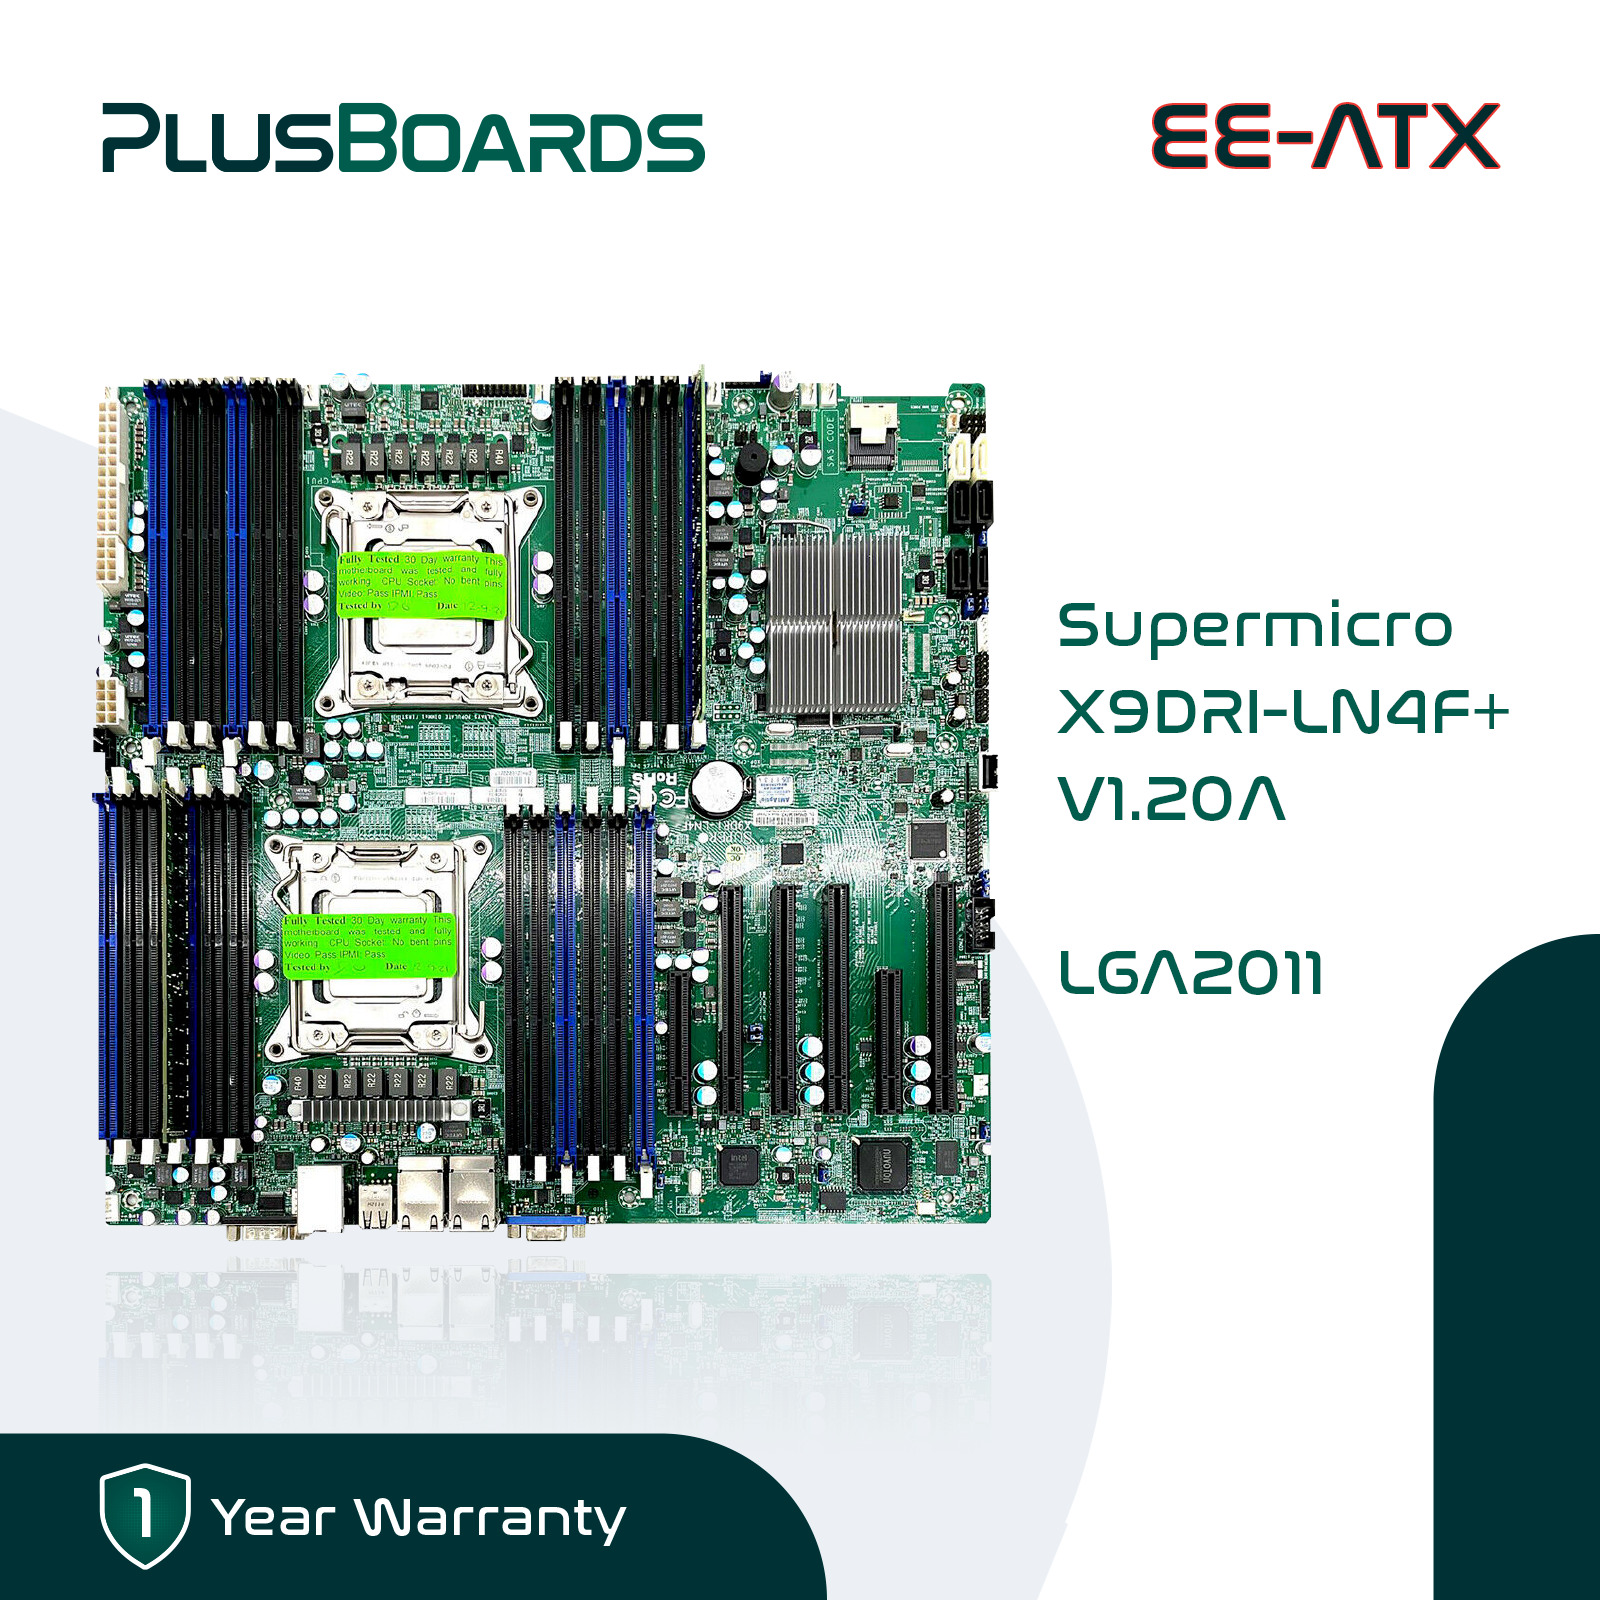 Supermicro X9DRi-LN4F+ EE-ATX LGA 2011 X79 Motherboard w/ Test CPU and Memory